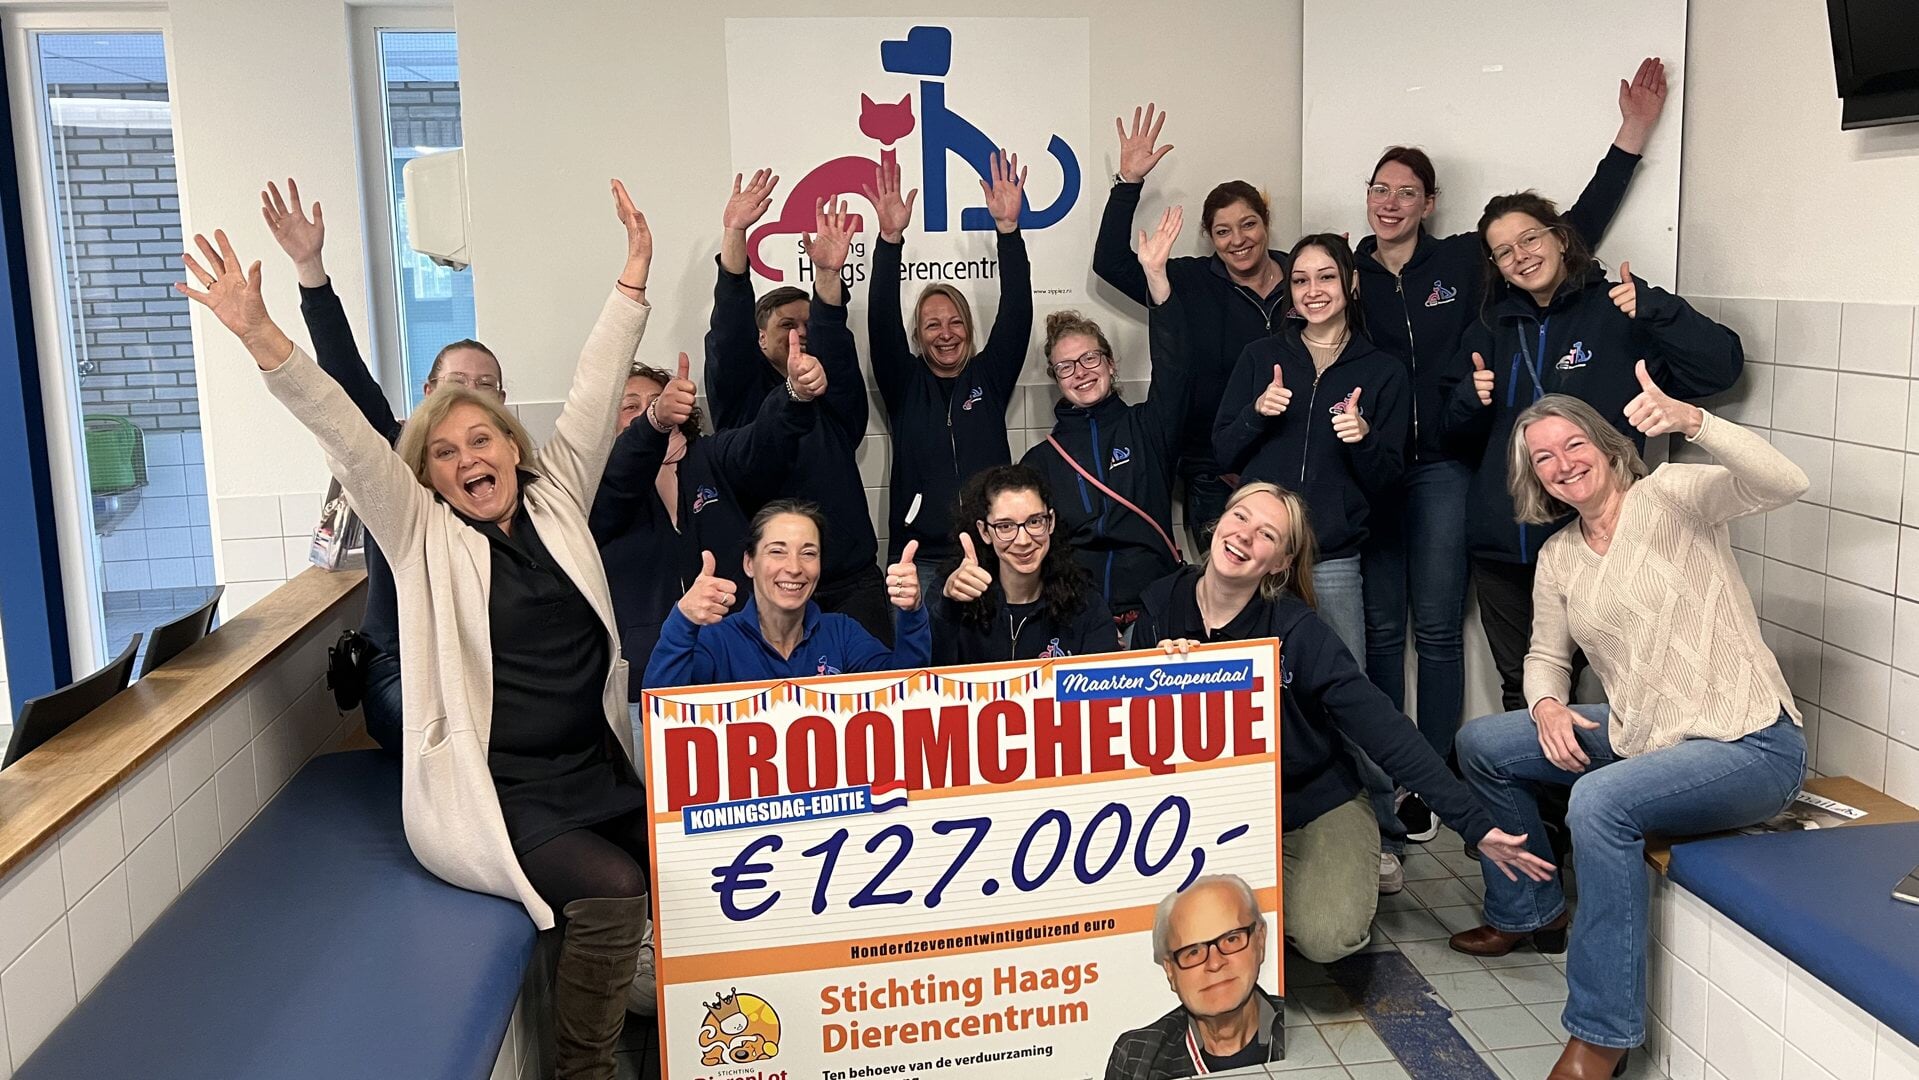 Medewerkers en vrijwilligers zijn enorm blij met de droomcheque van Stichting Dierenlot.